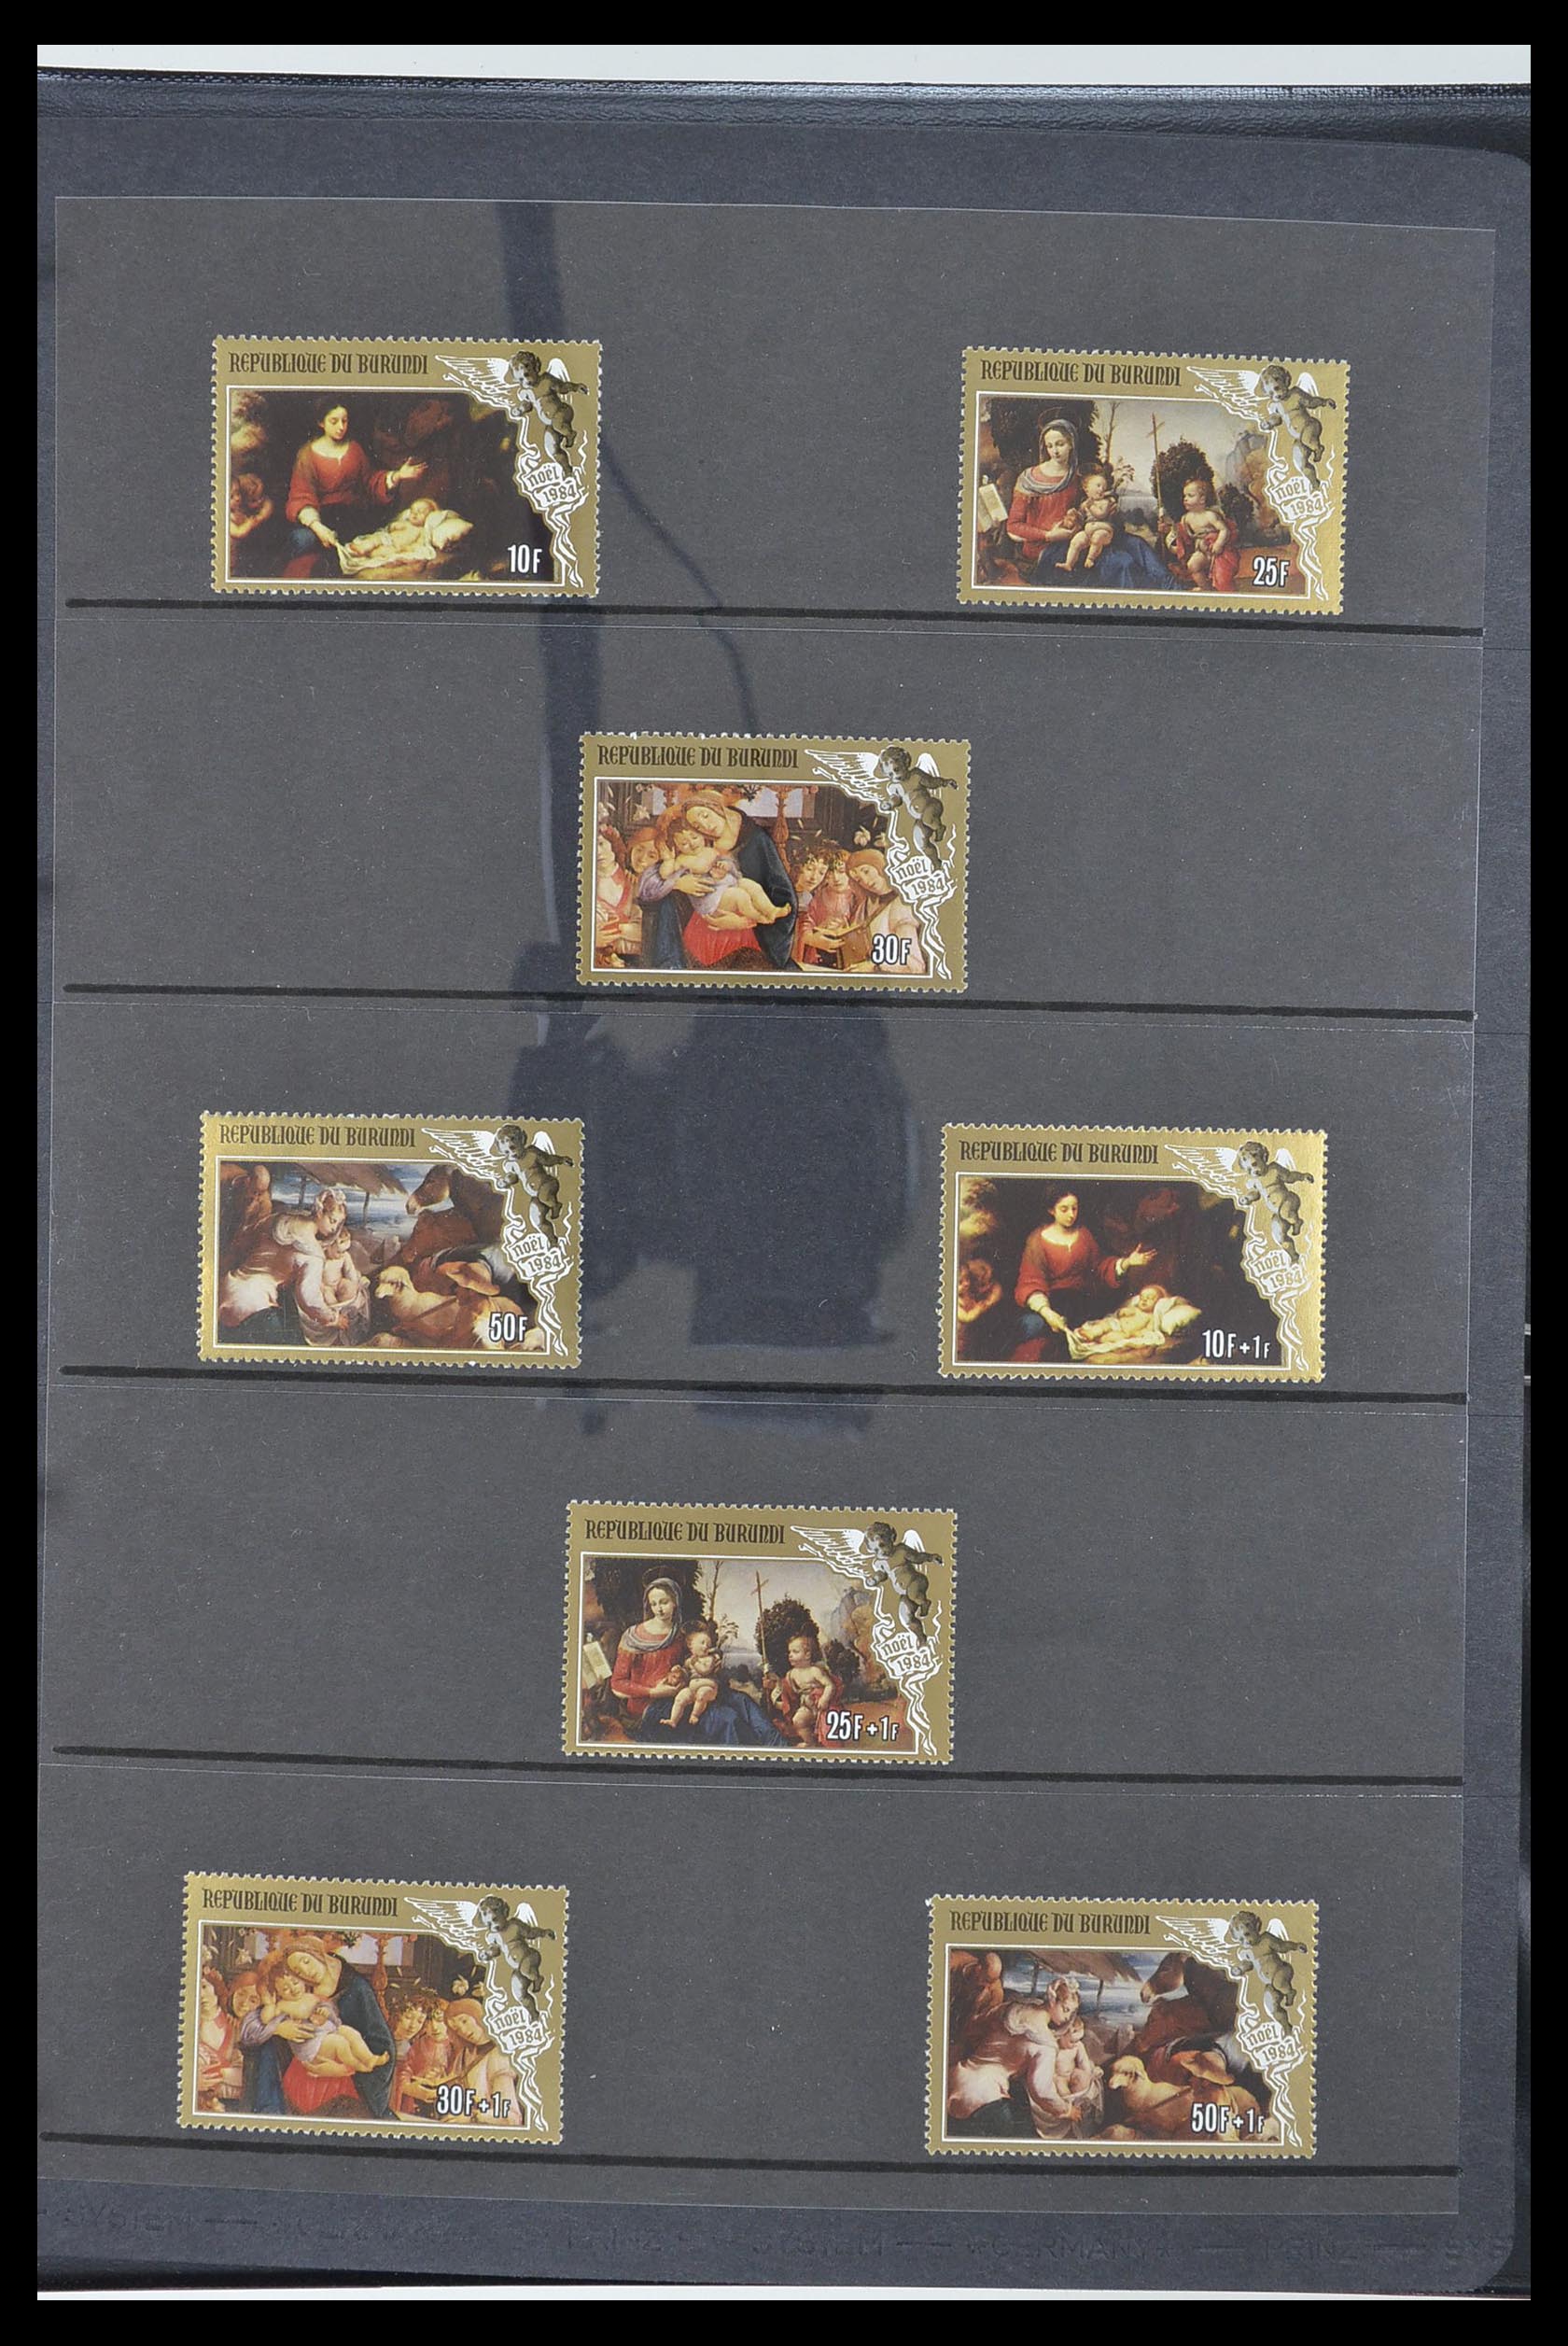 33764 331 - Stamp collection 33764 Burundi 1962-2004.